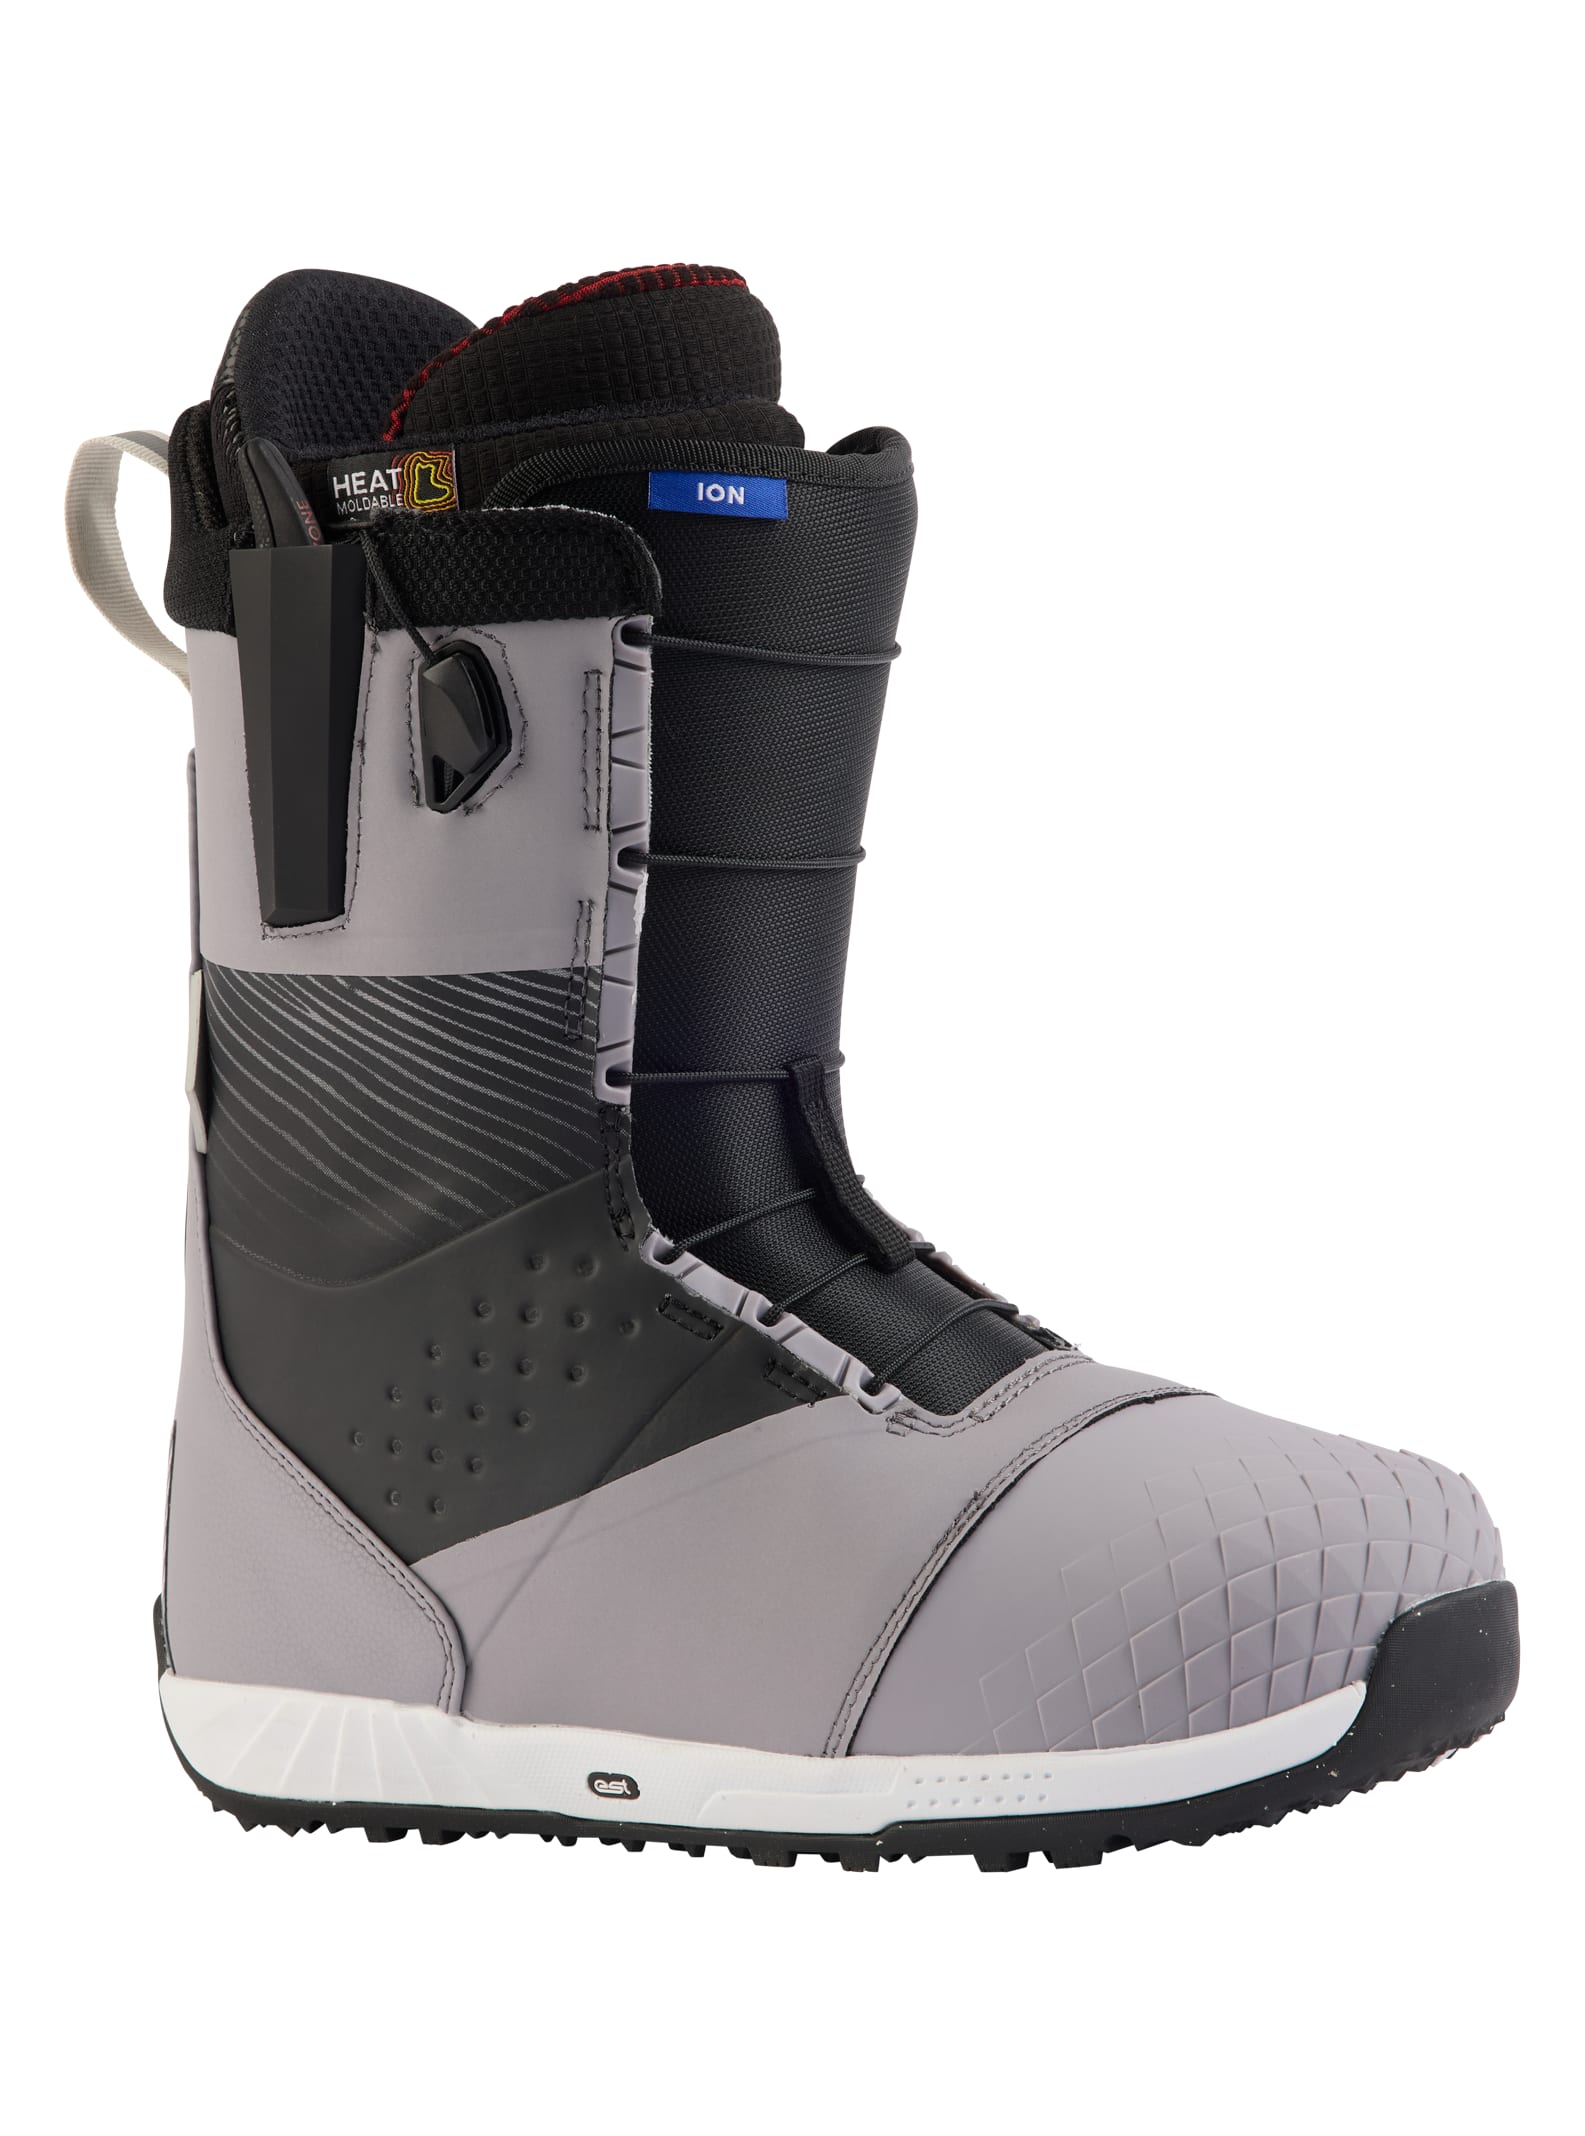 Men's Snowboard Boots | Burton Snowboards US NZ